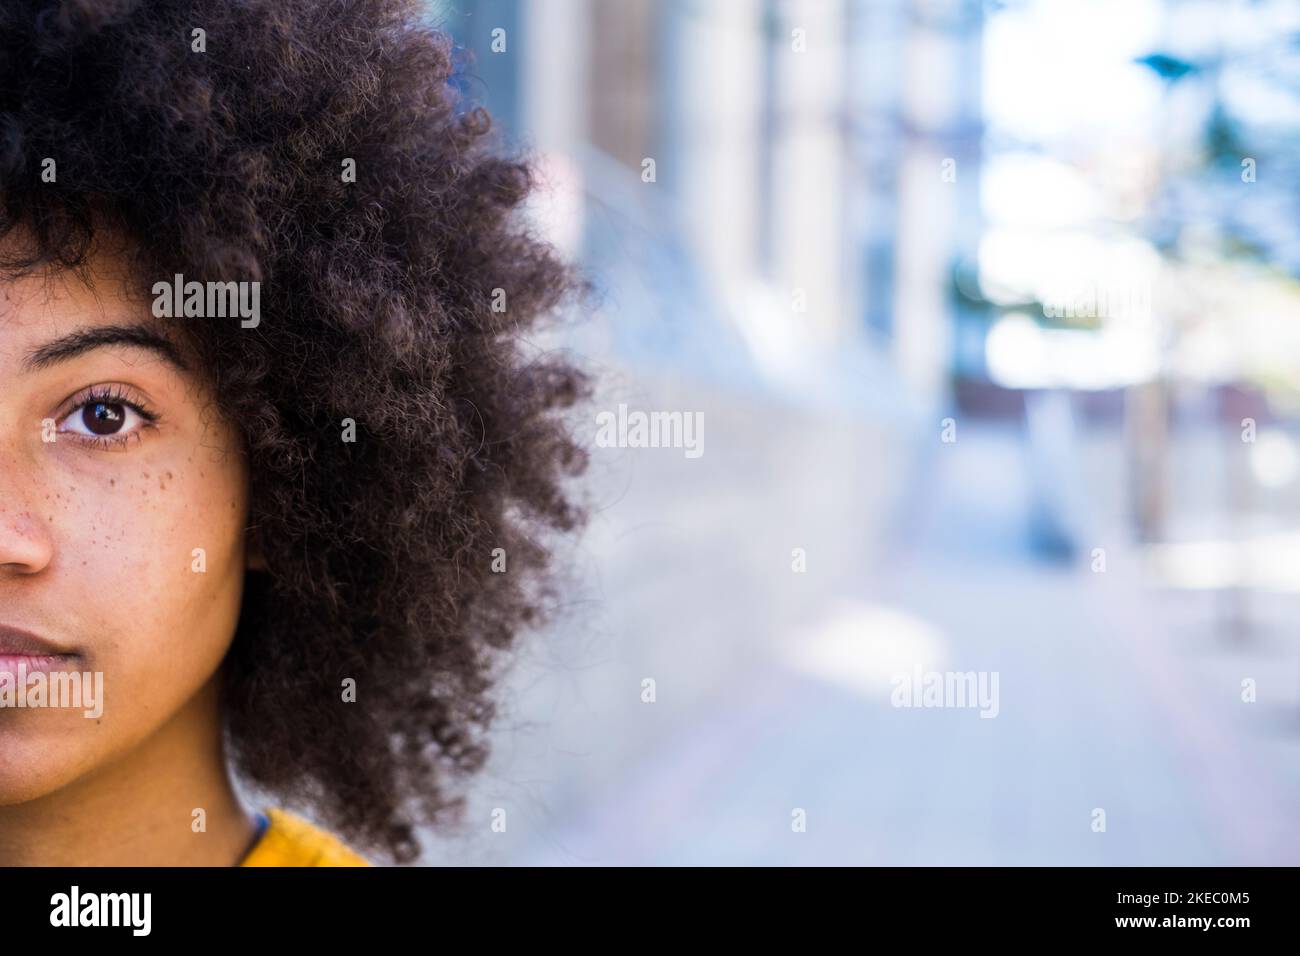 Portrait d'un demi-visage d'une jeune femme africaine ou américaine qui regarde l'appareil photo.Gros plan de l'œil de la fille afro, copie et espace vide Banque D'Images